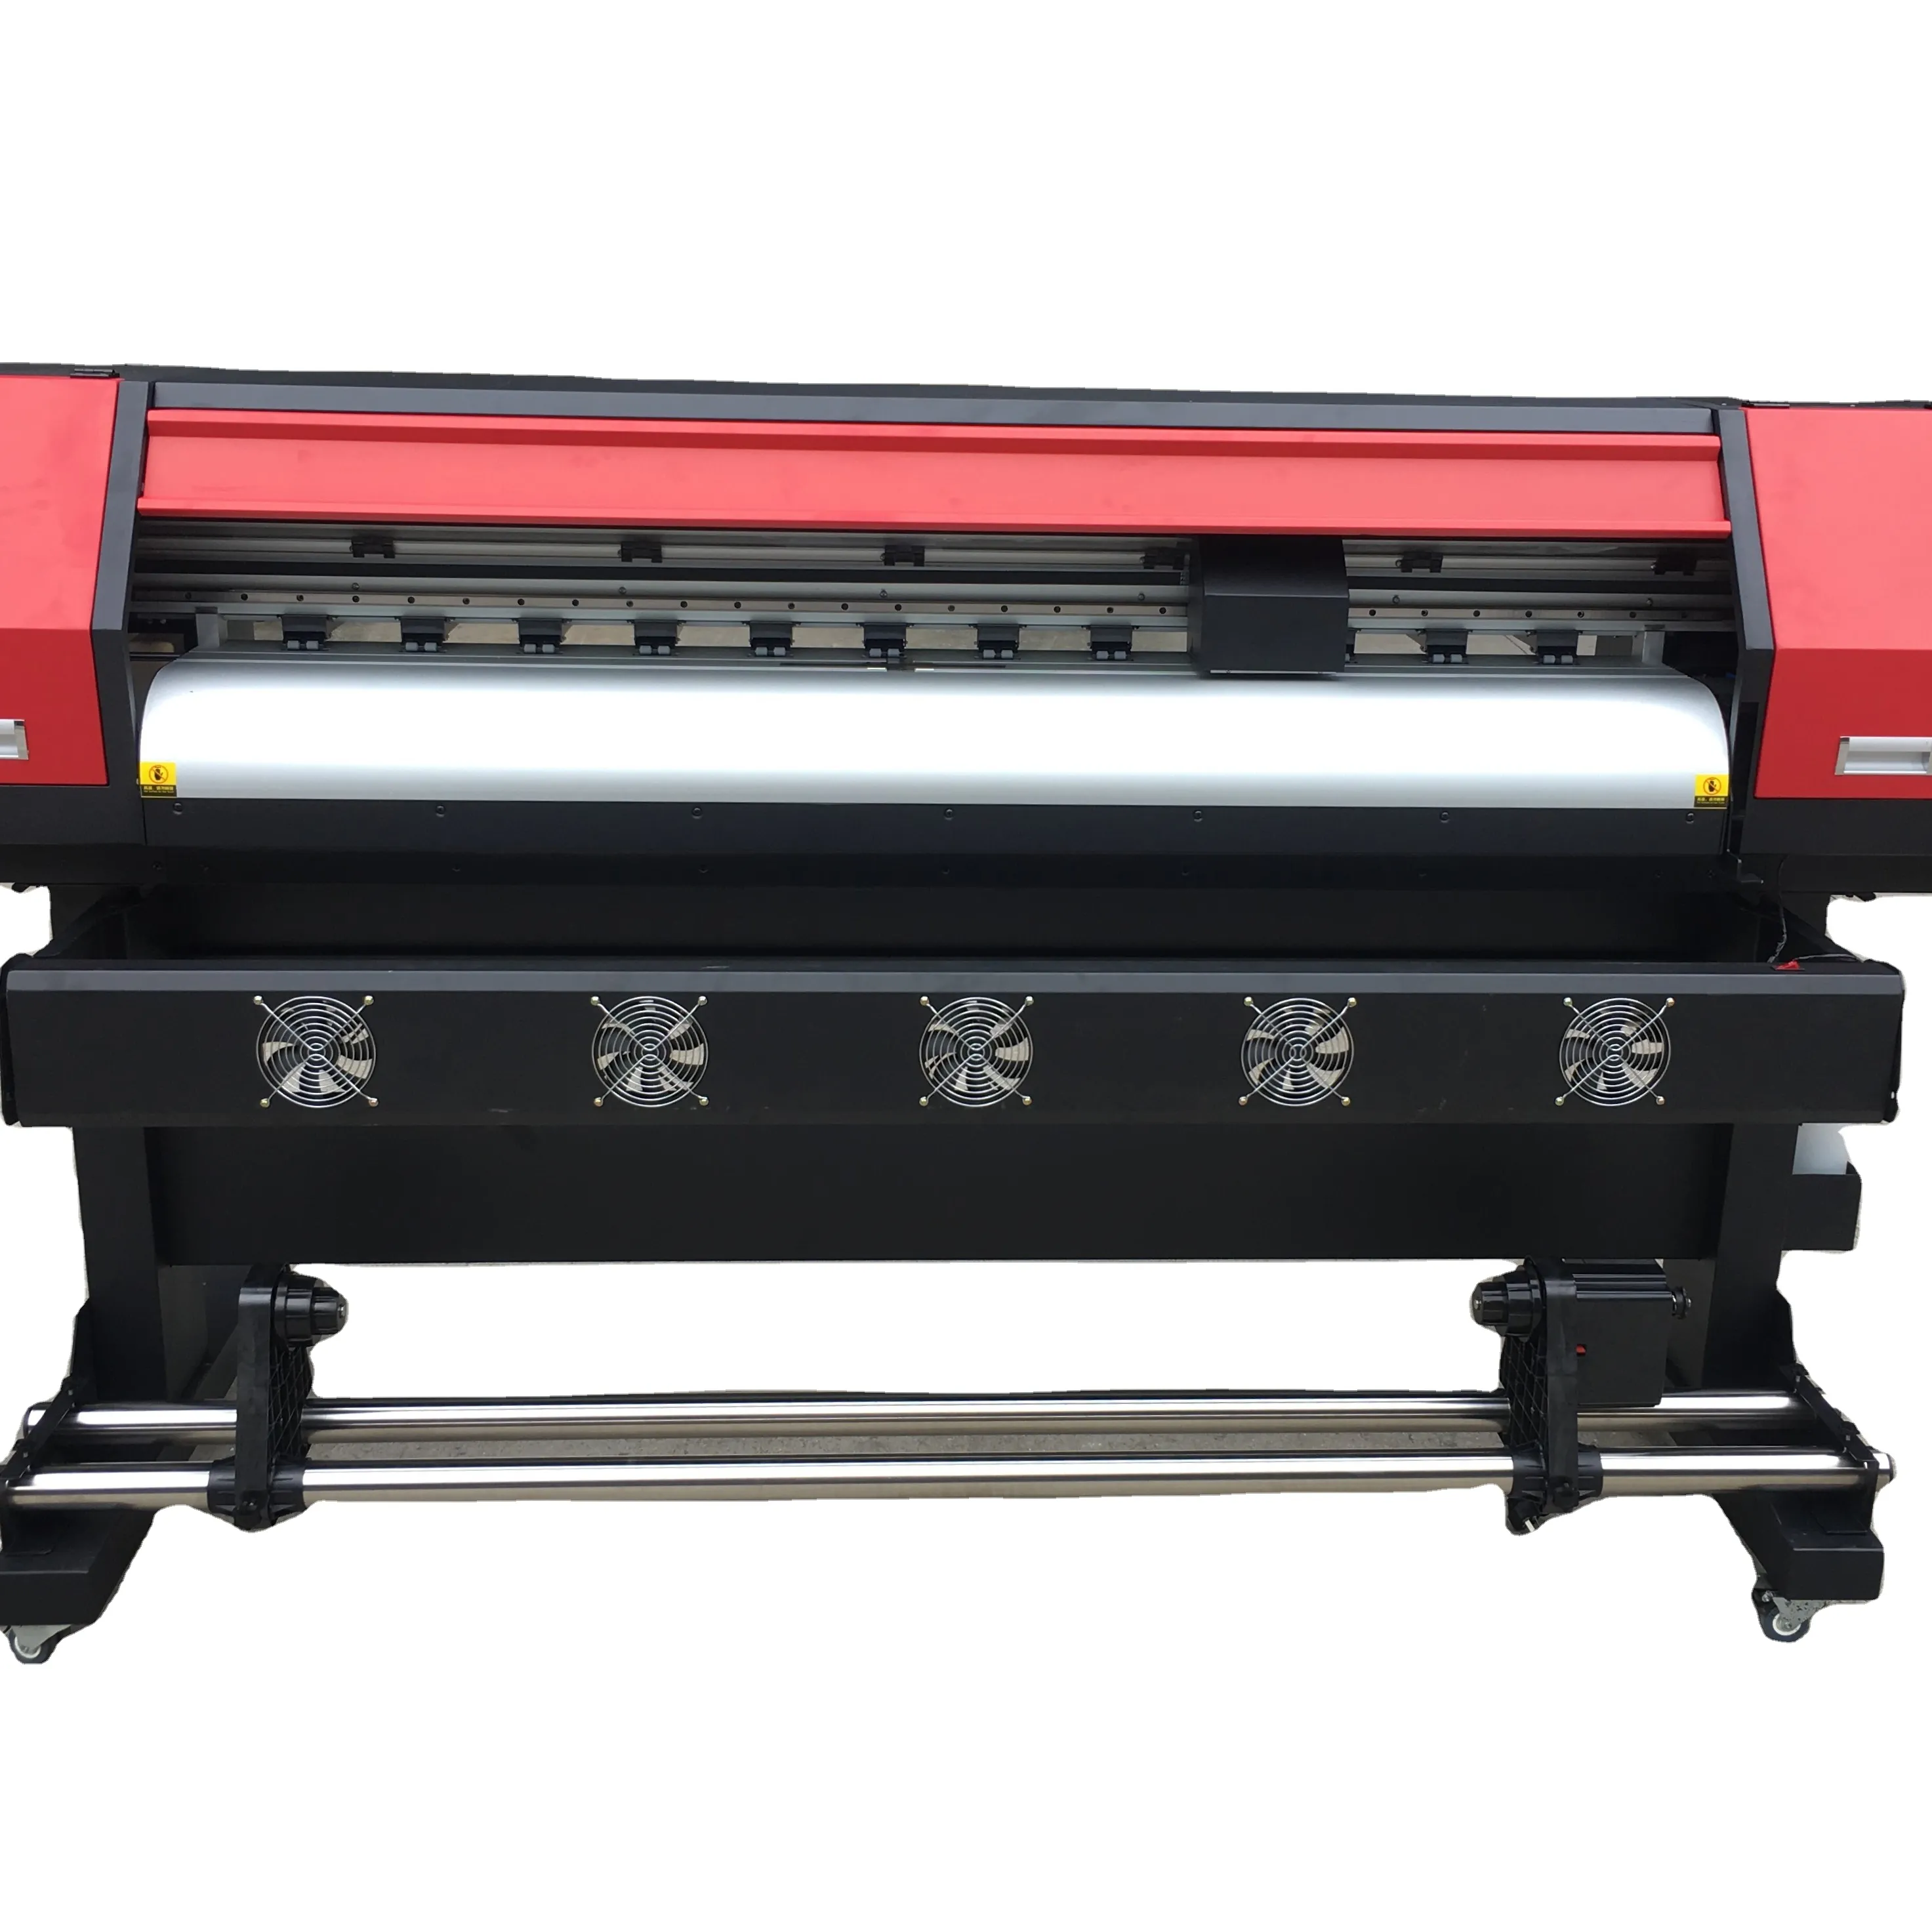 Suncolor murah 5ftLarge format printer 1600 mm eco solt Printer mesin printer gambar banner dengan 2 EpsoN xp600